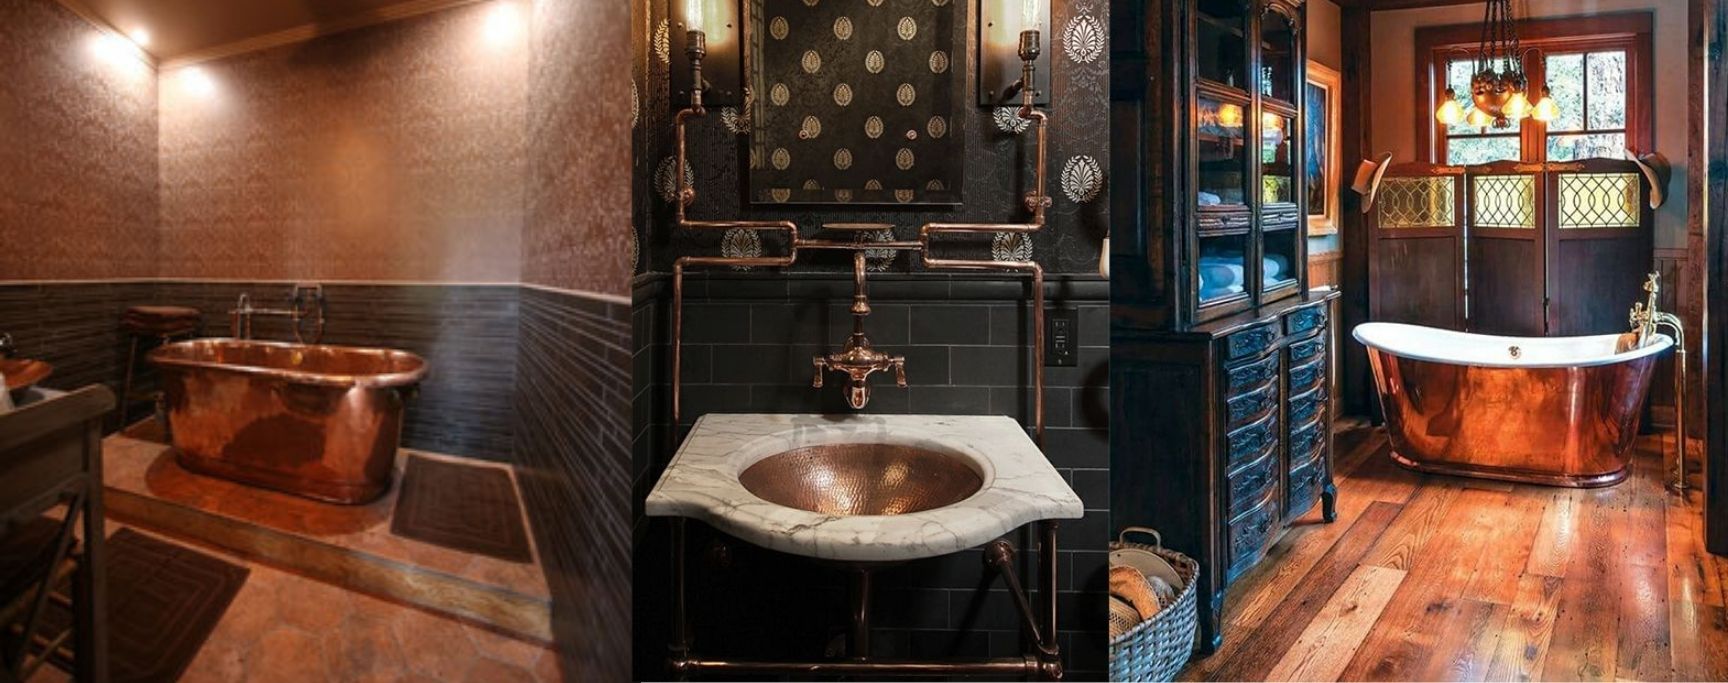 salle de bain steampunk